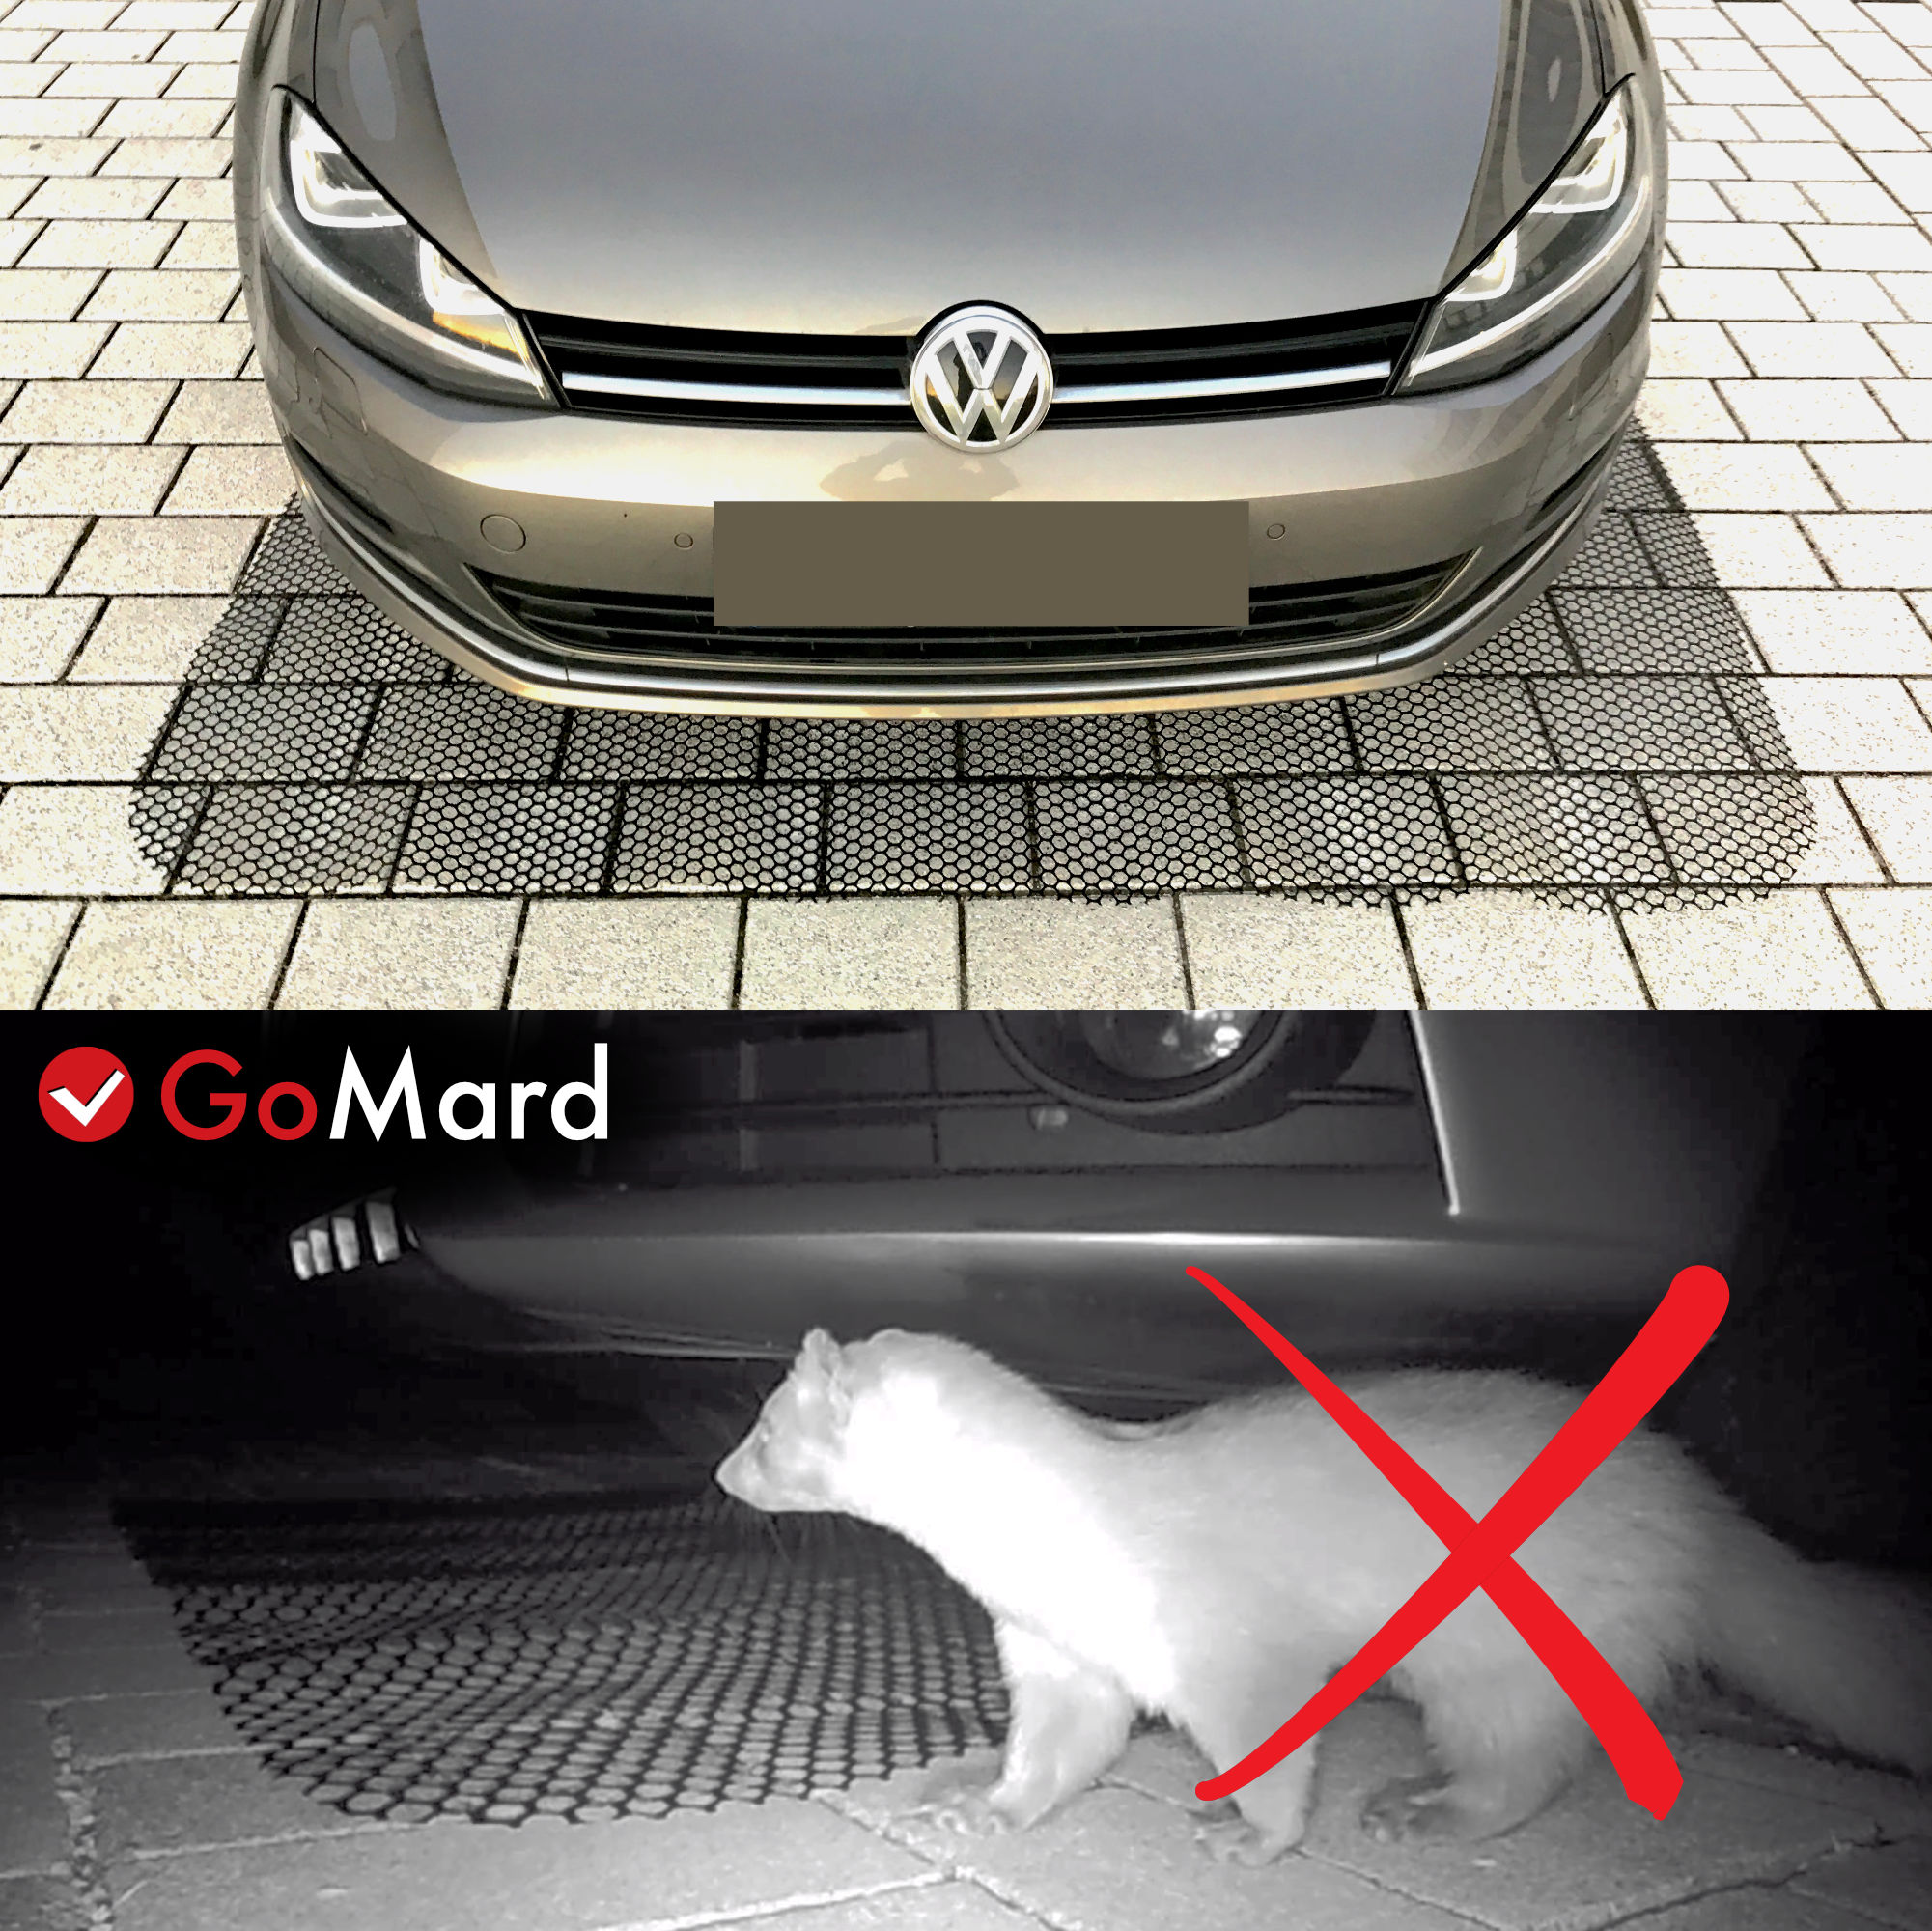 Marderschutz ✓ gegen Marderschäden im Motorraum - Marderschreck